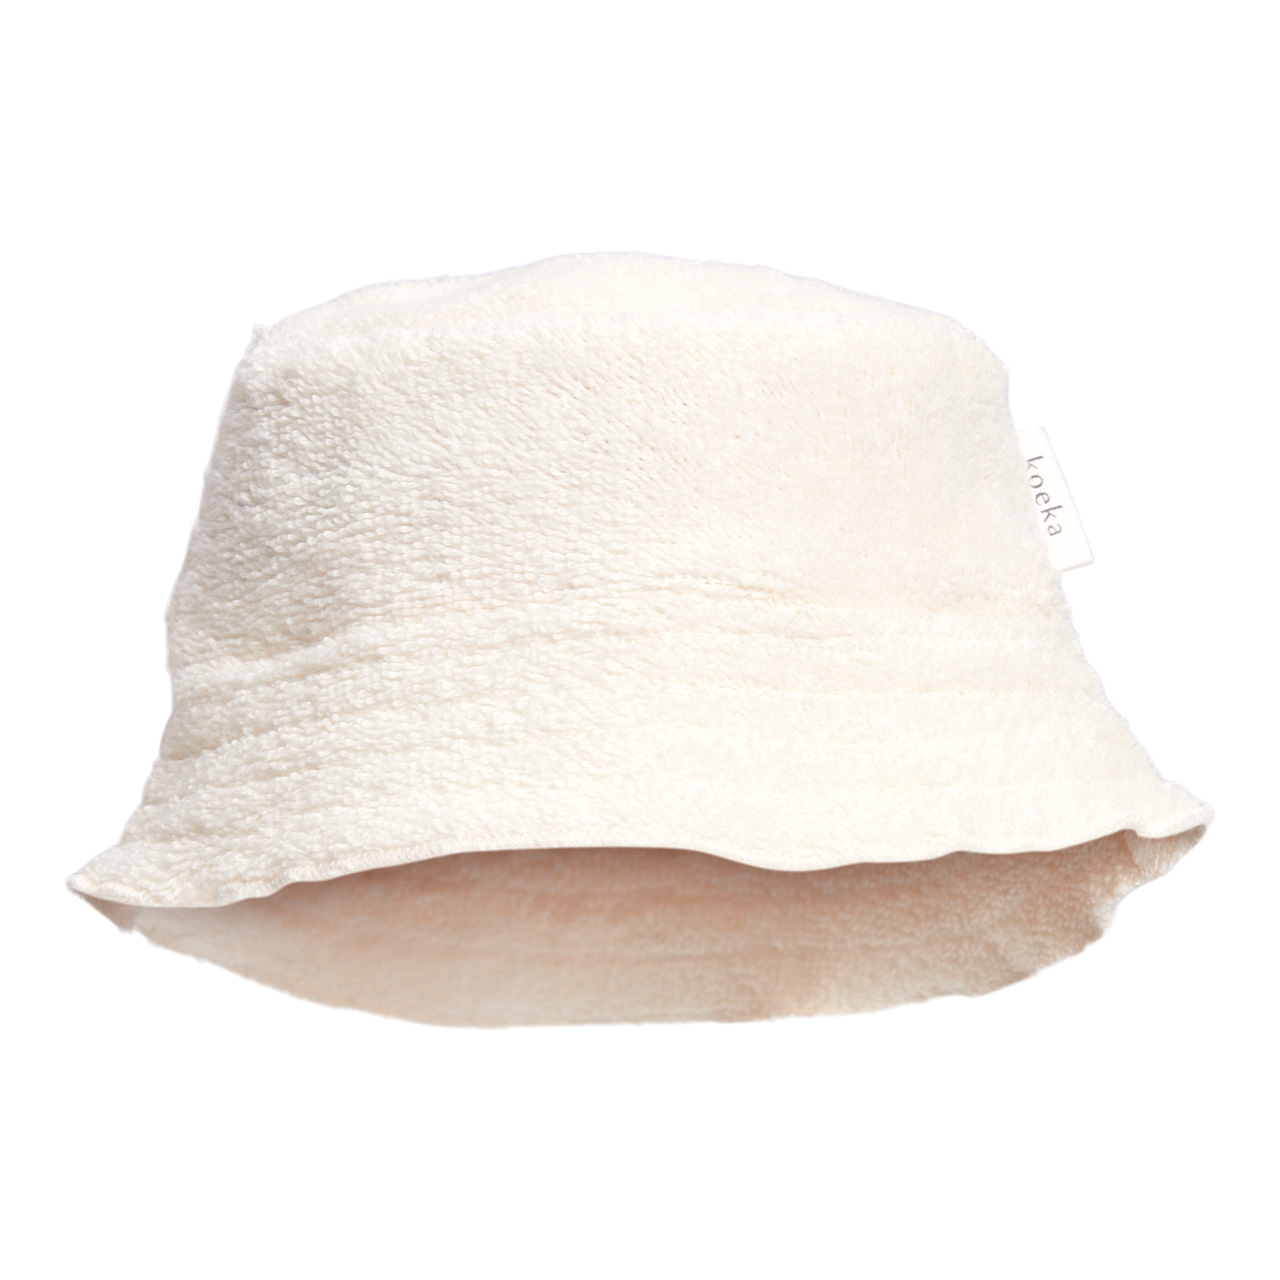 Baby summer bucket hat Dijon Daily warm white